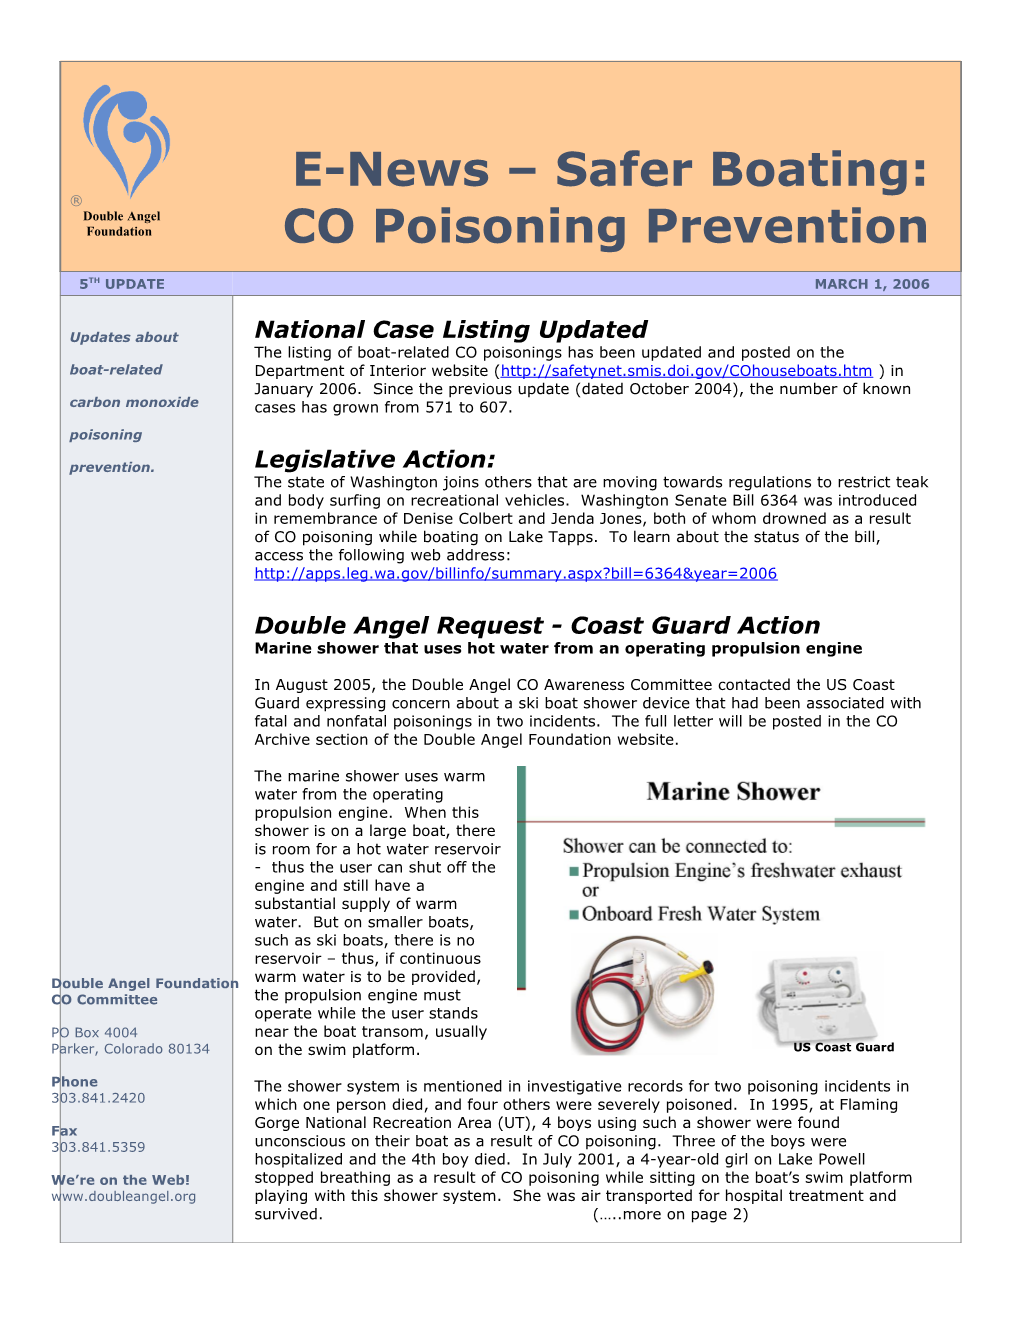 E-News Safer Boating: CO Poisoning Prevention